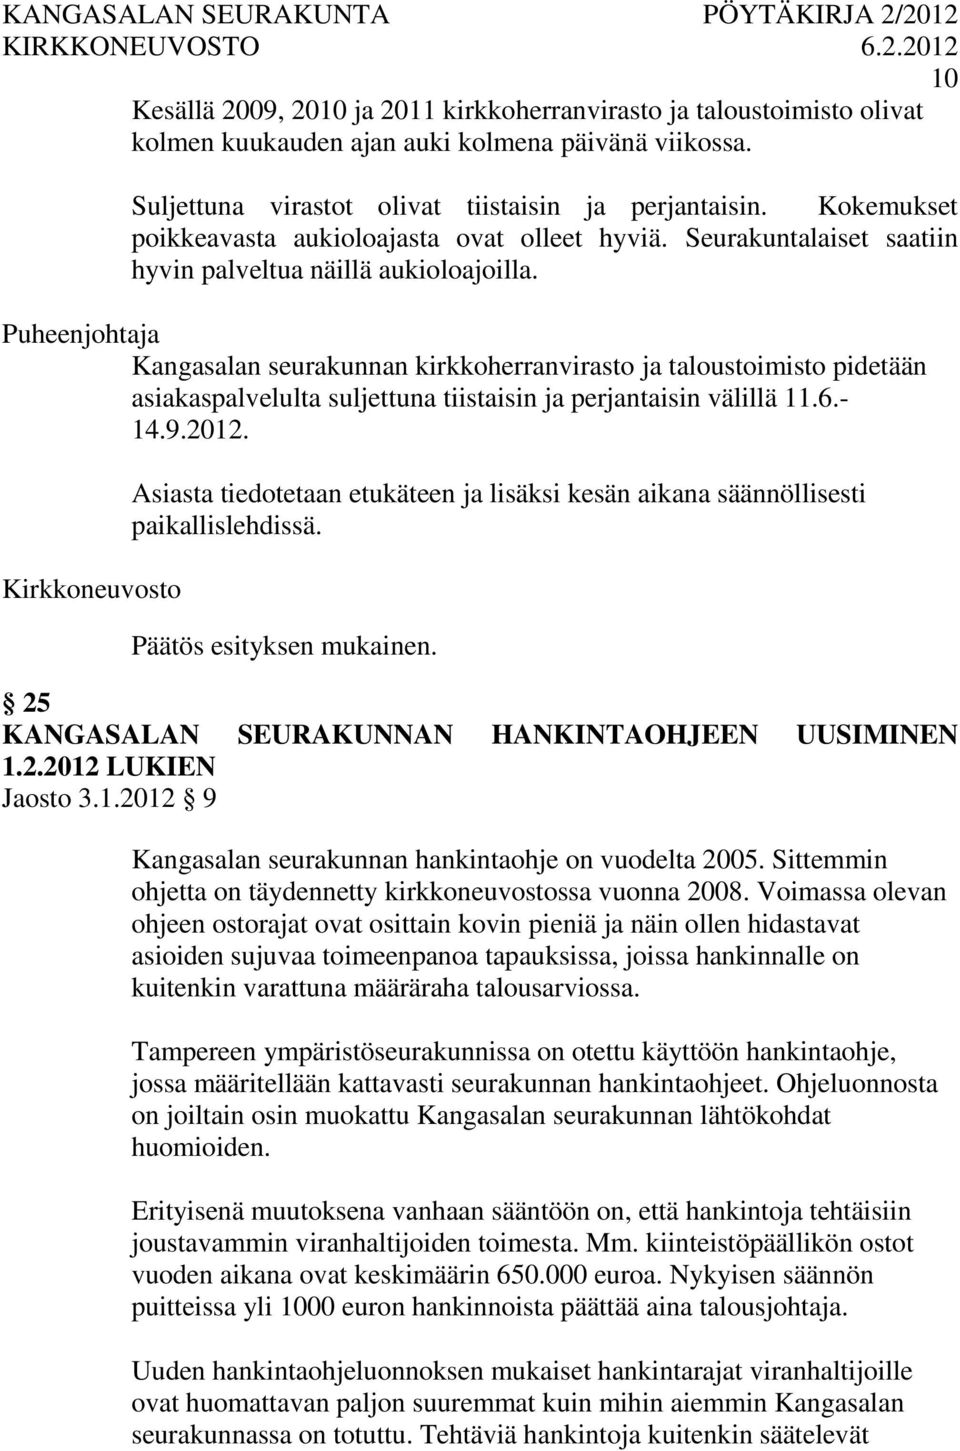 Puheenjohtaja Kangasalan seurakunnan kirkkoherranvirasto ja taloustoimisto pidetään asiakaspalvelulta suljettuna tiistaisin ja perjantaisin välillä 11.6.- 14.9.2012.